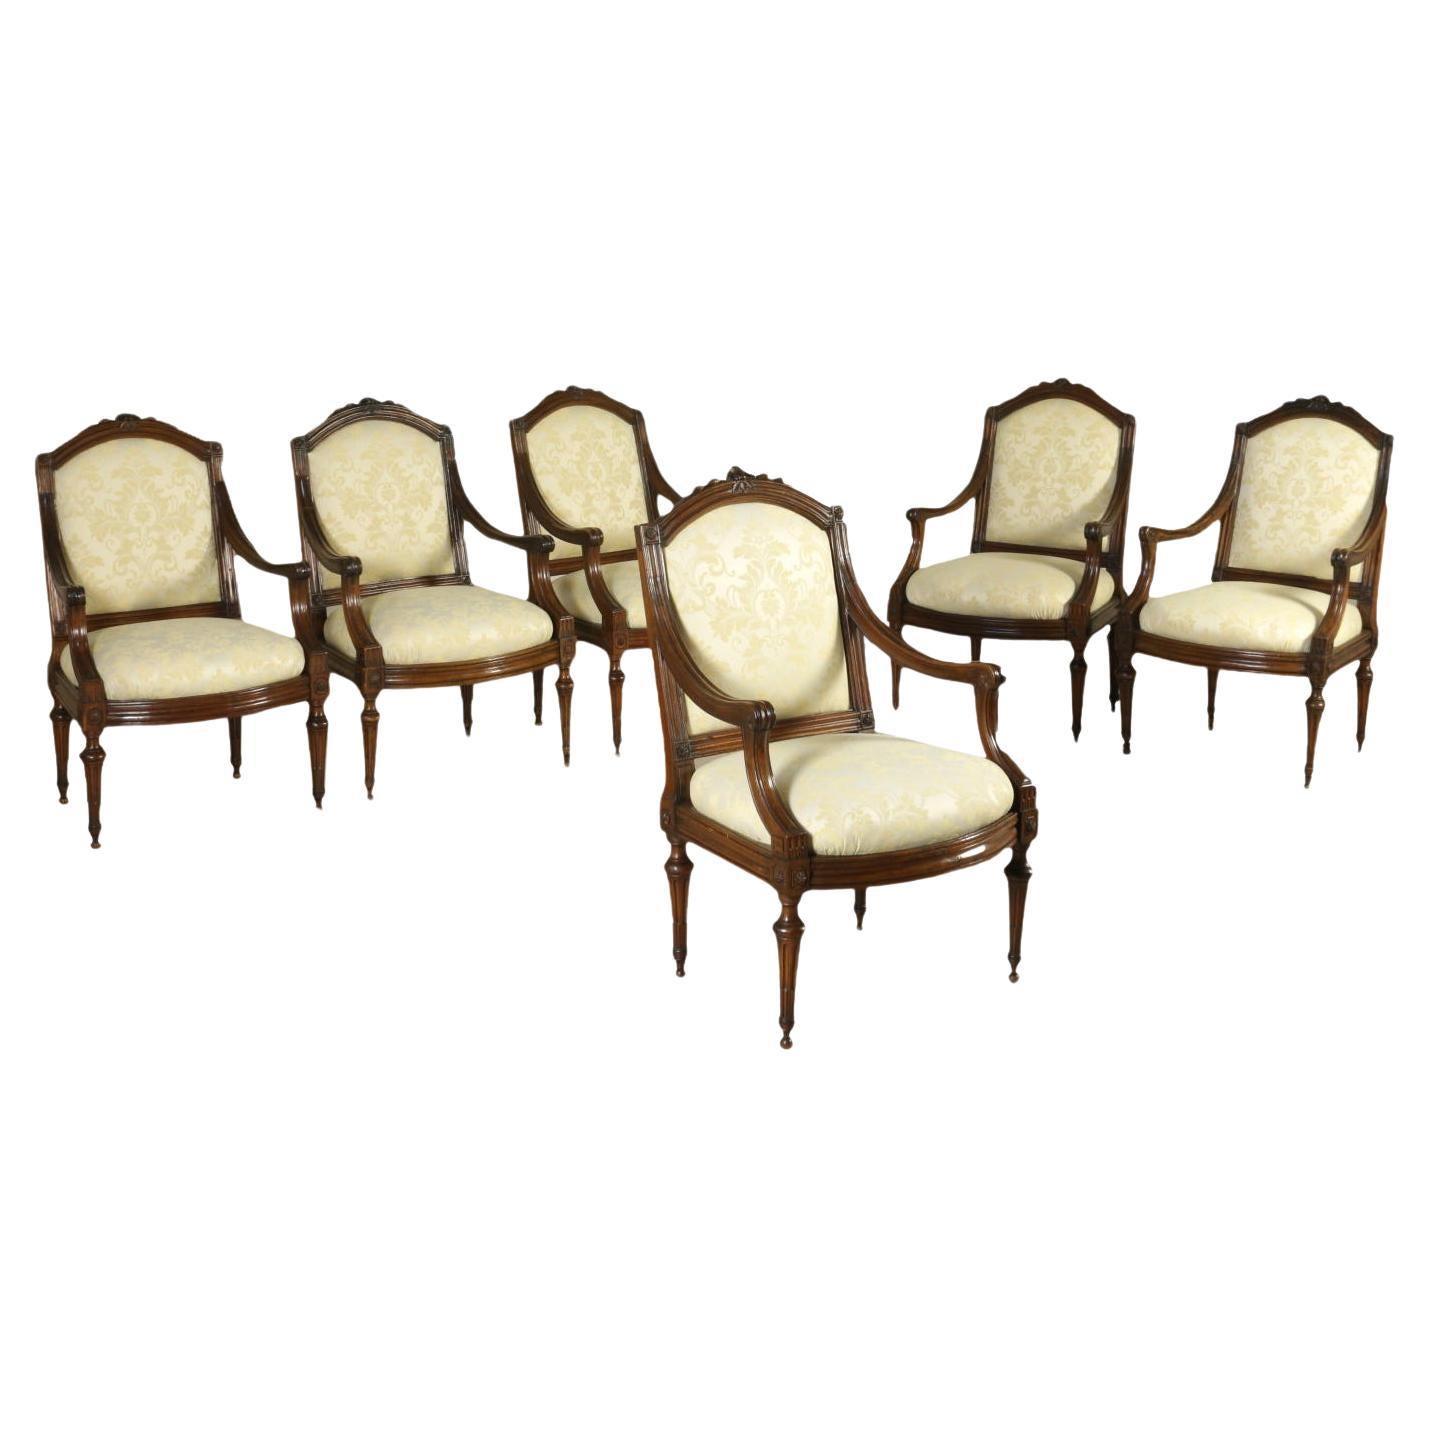 Gruppe von sechs Louis-XVI-Sesseln aus Nussbaumholz, weiß und braun